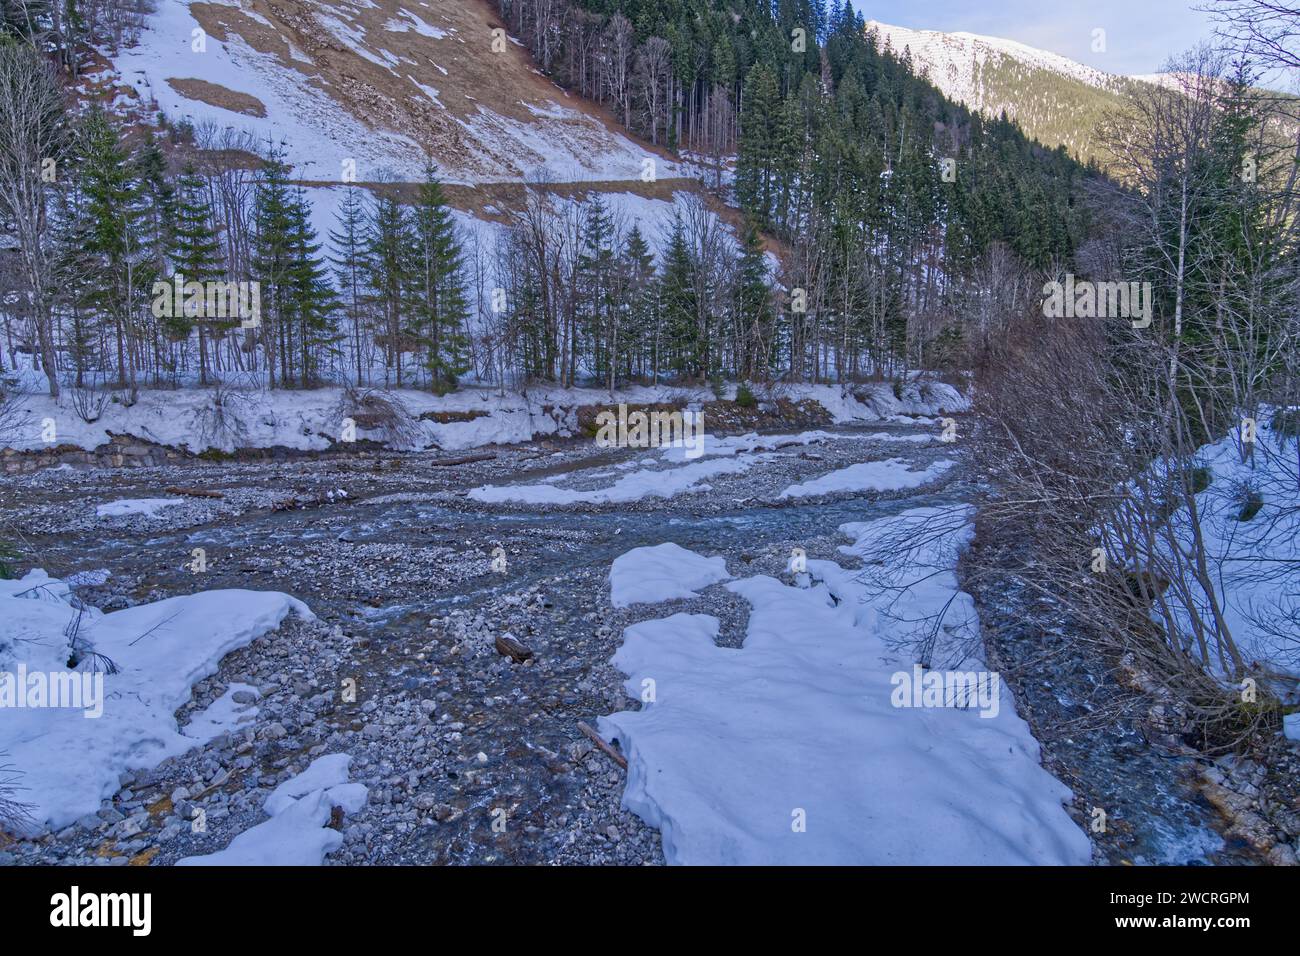 Une rivière pittoresque avec une eau cristalline qui coule doucement sur des rochers lisses, en hiver Banque D'Images